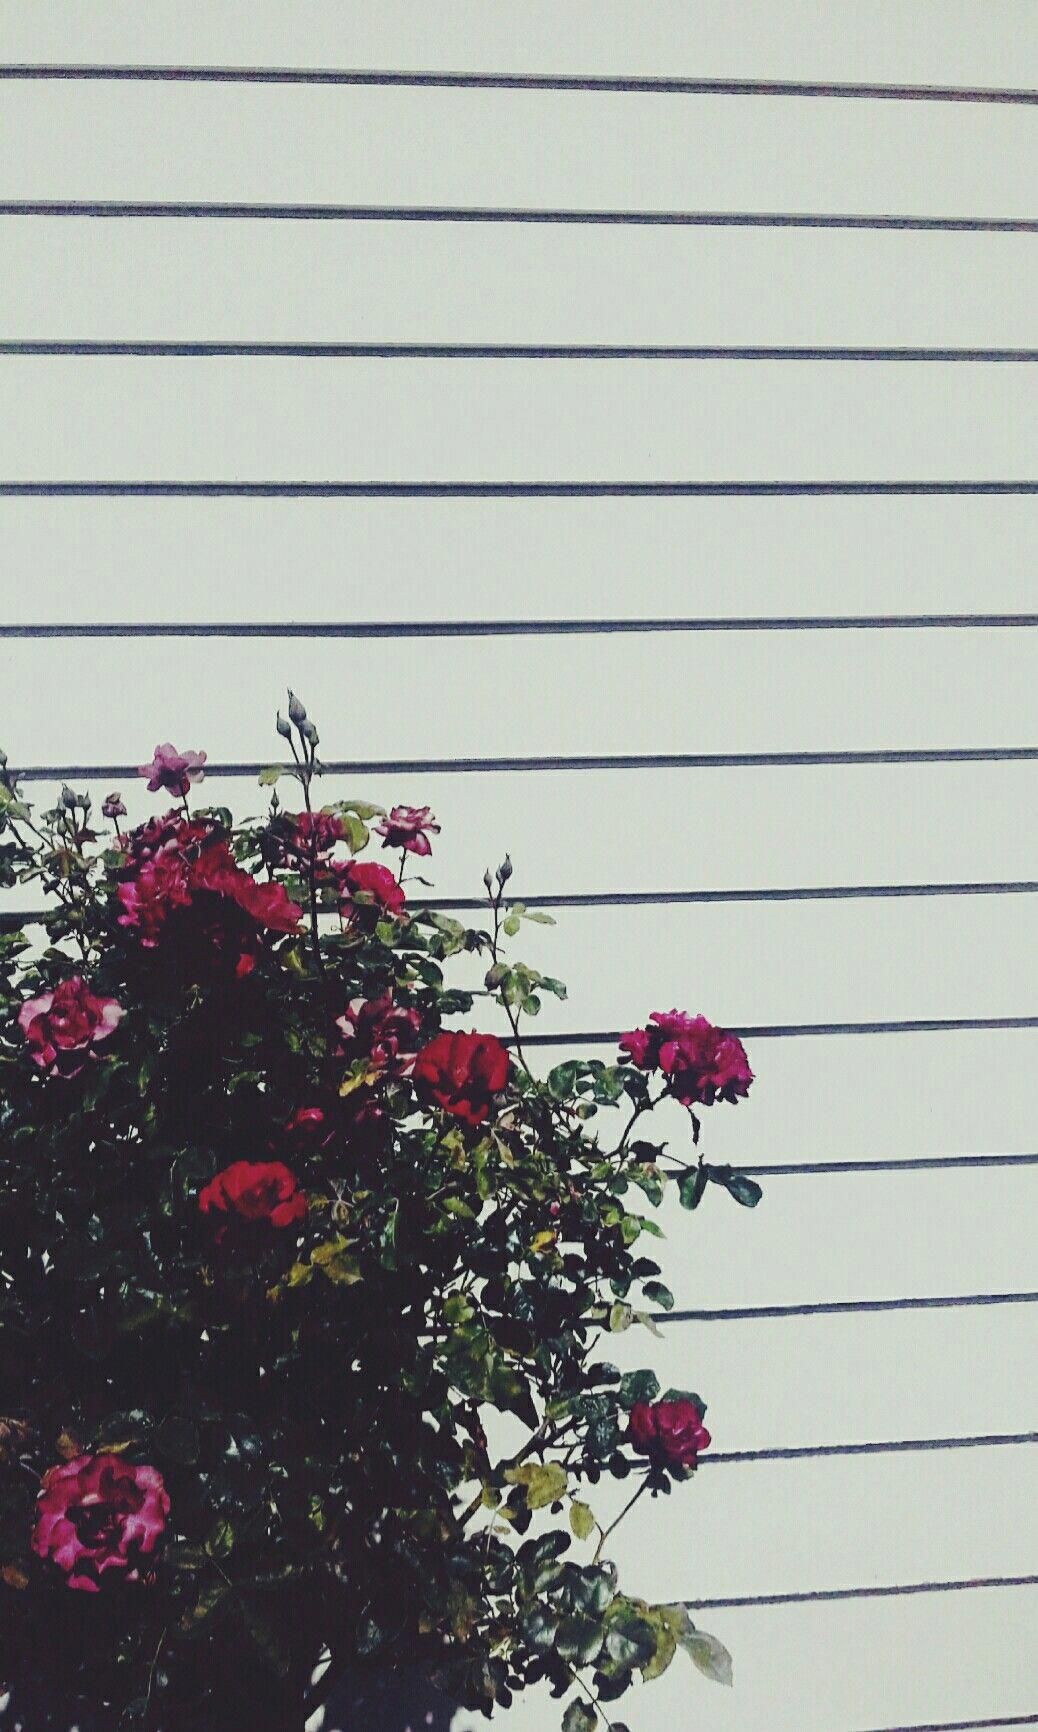 Grunge tumblr aesthetic flower wallpapers